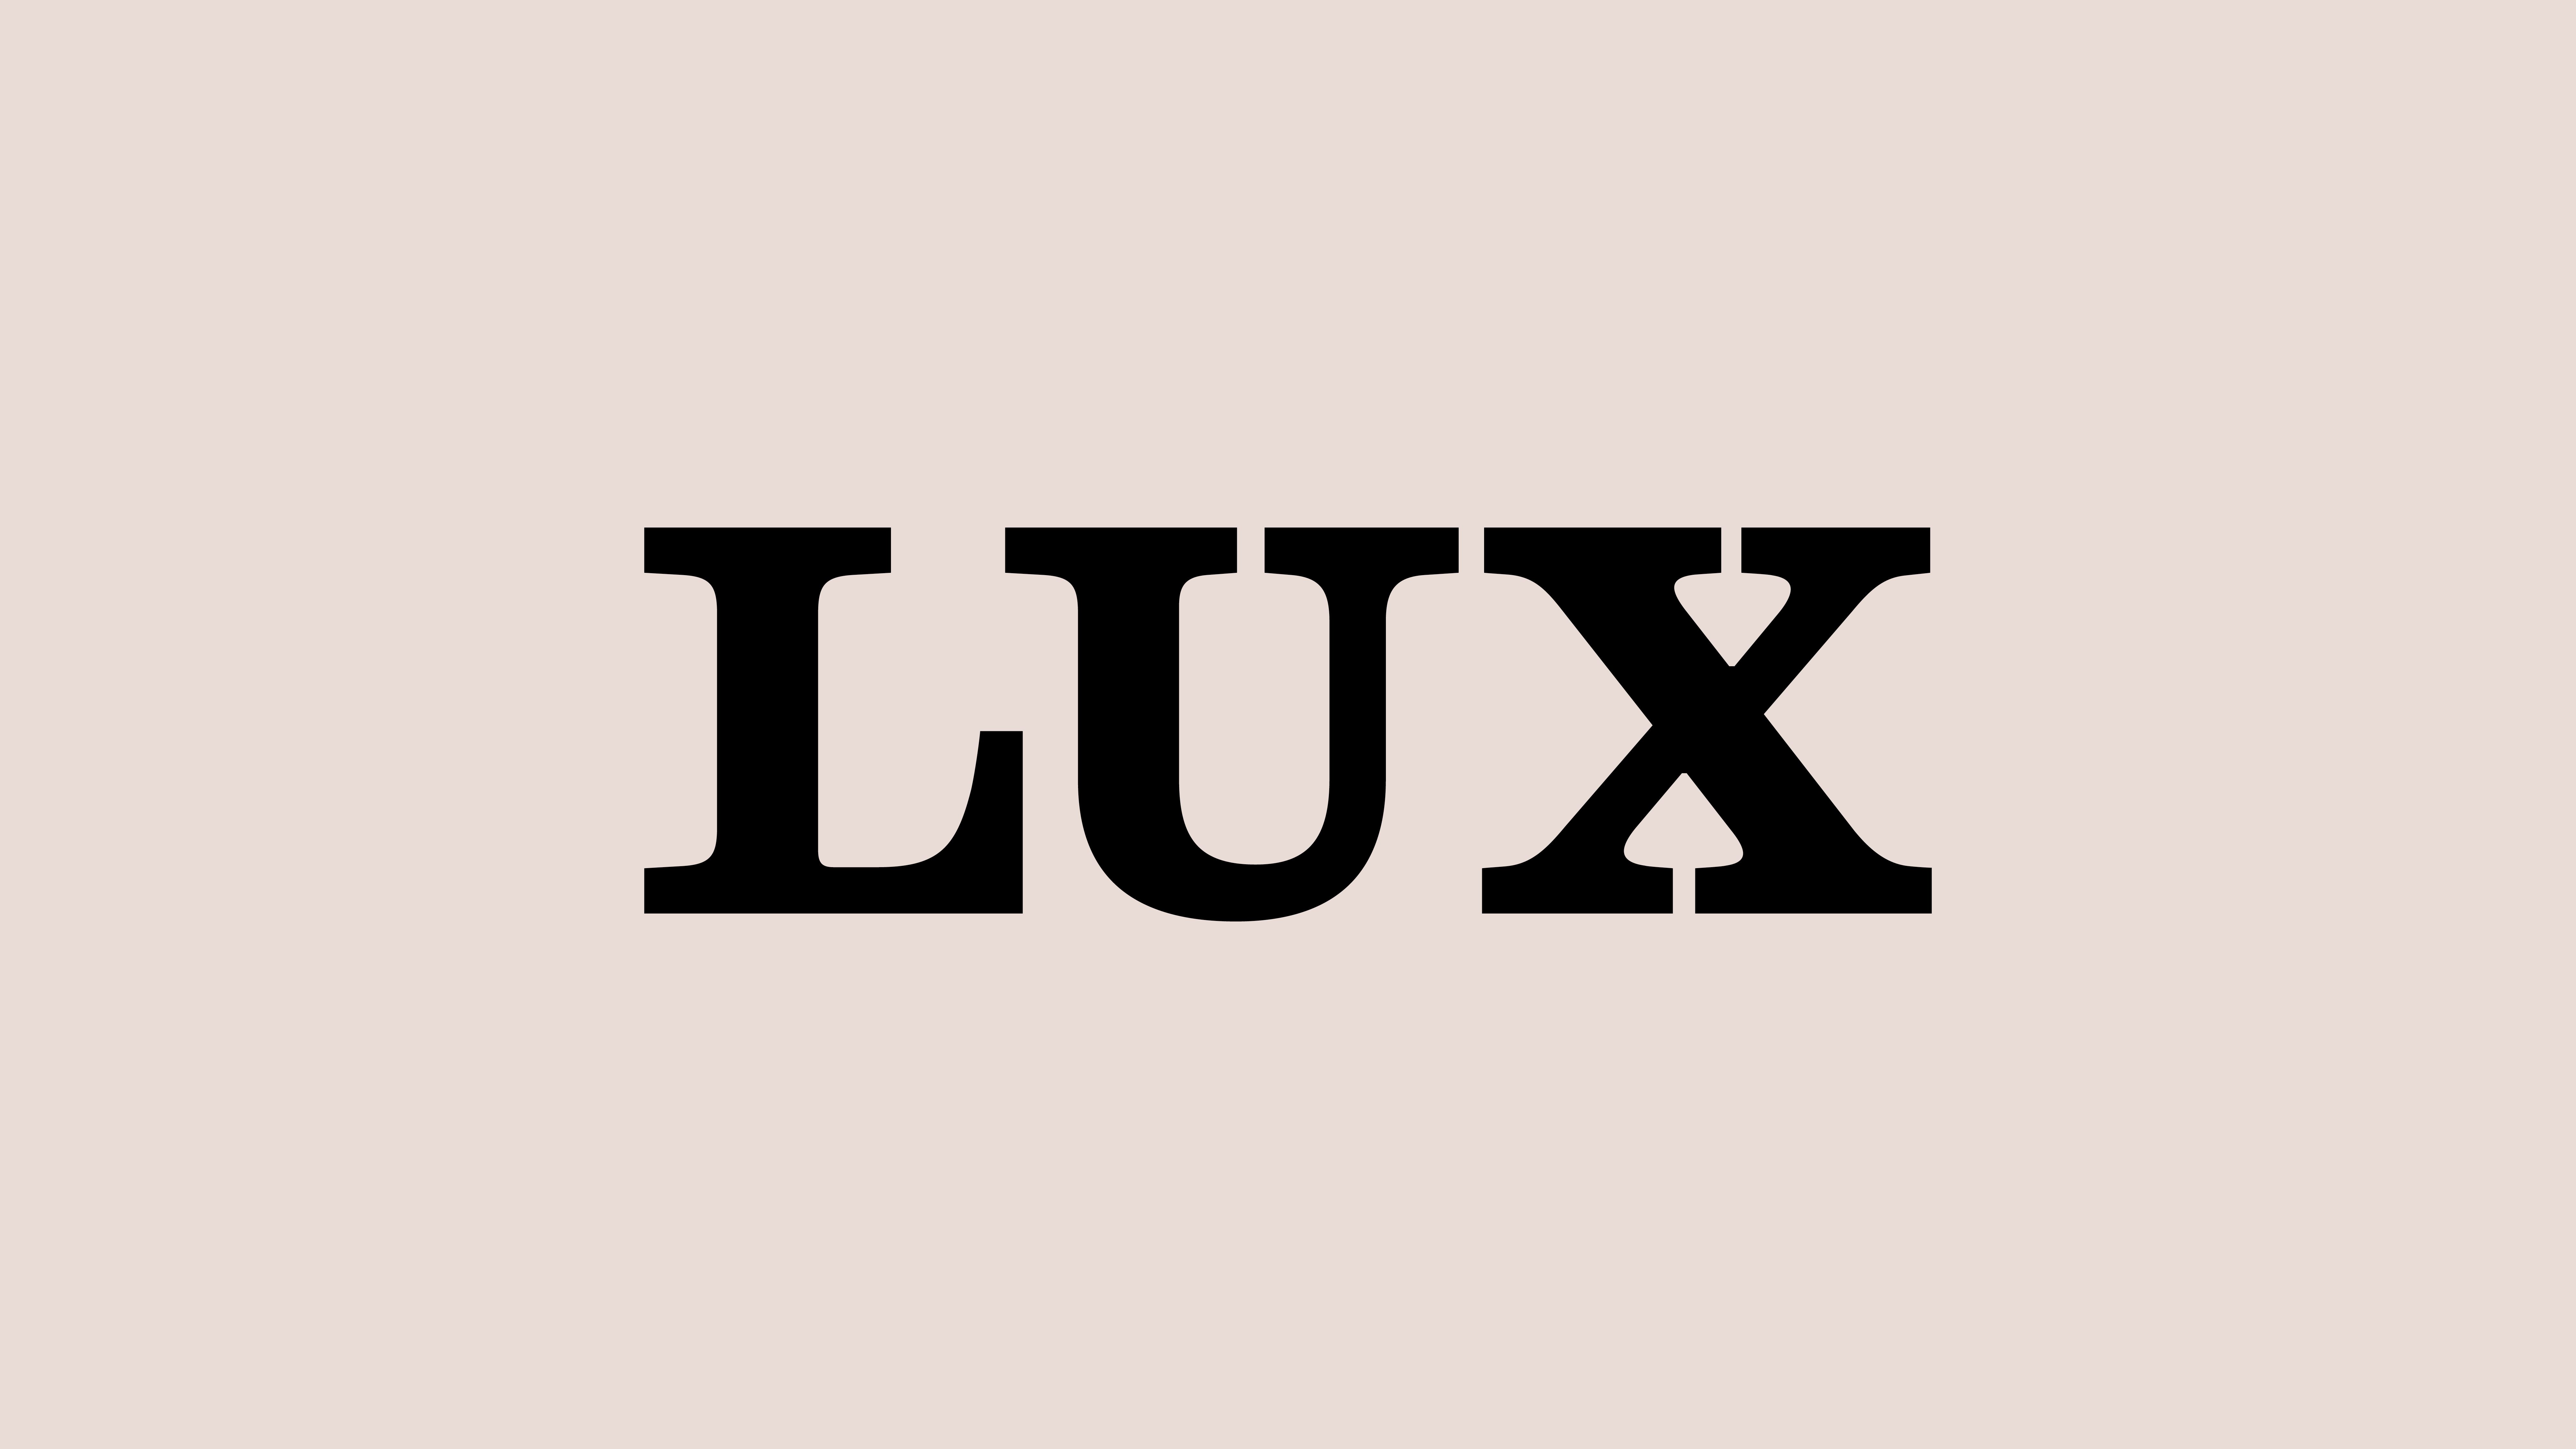 Lux Golden Party 3D Text Effect | Photoshop PREMIUM PSD File